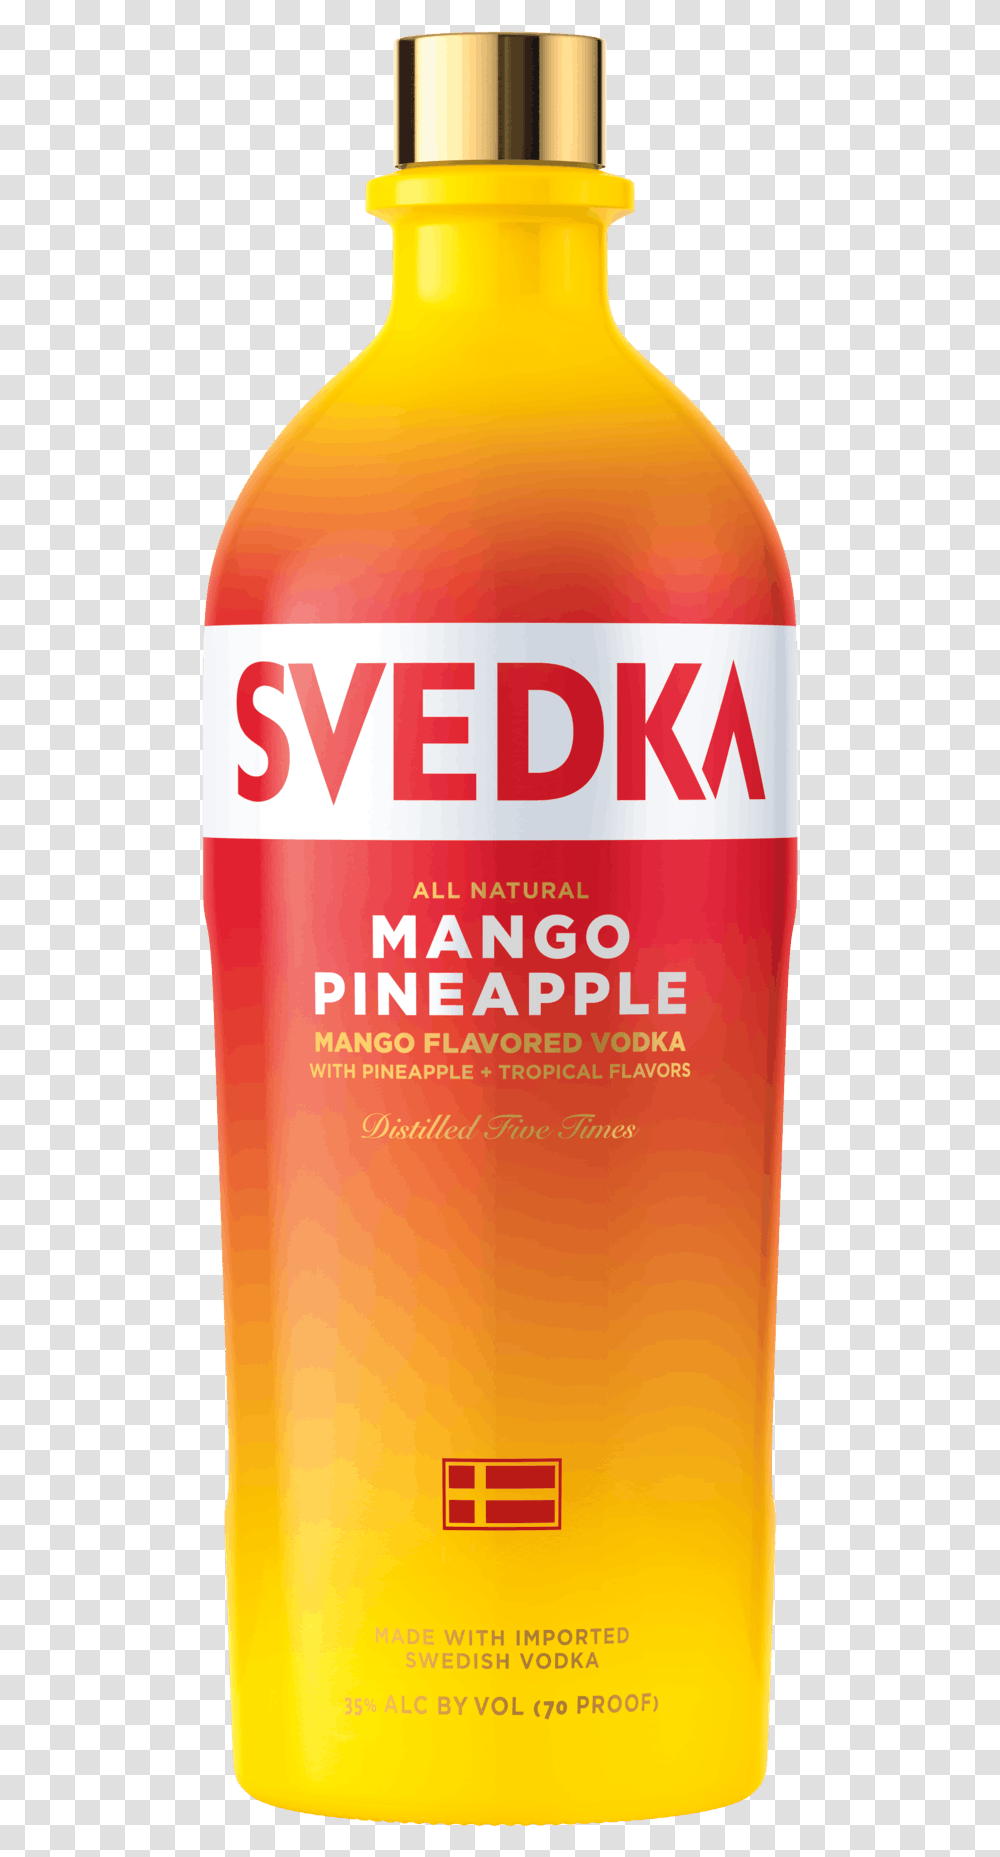 Svedka Mango Pineapple Vodka Bottle, Beer, Alcohol, Beverage, Drink Transparent Png